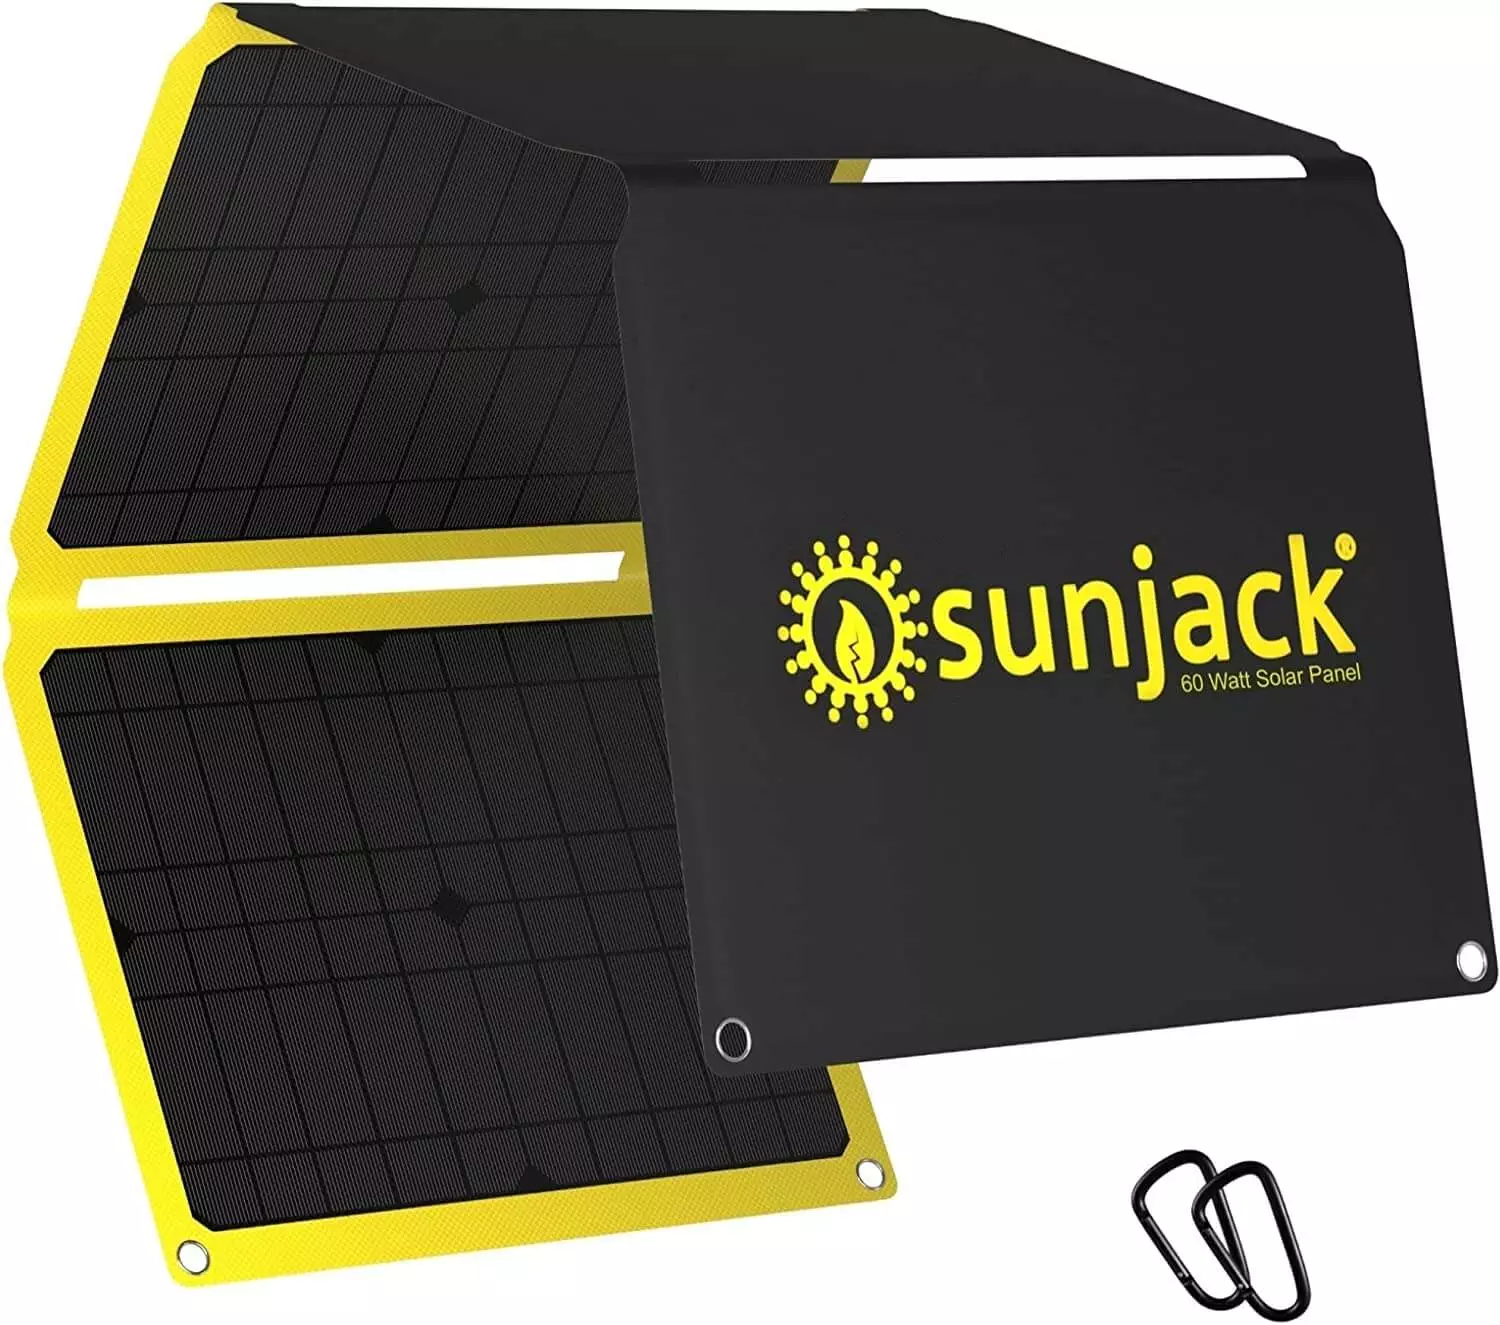 Sunjack 60 Solar Panel